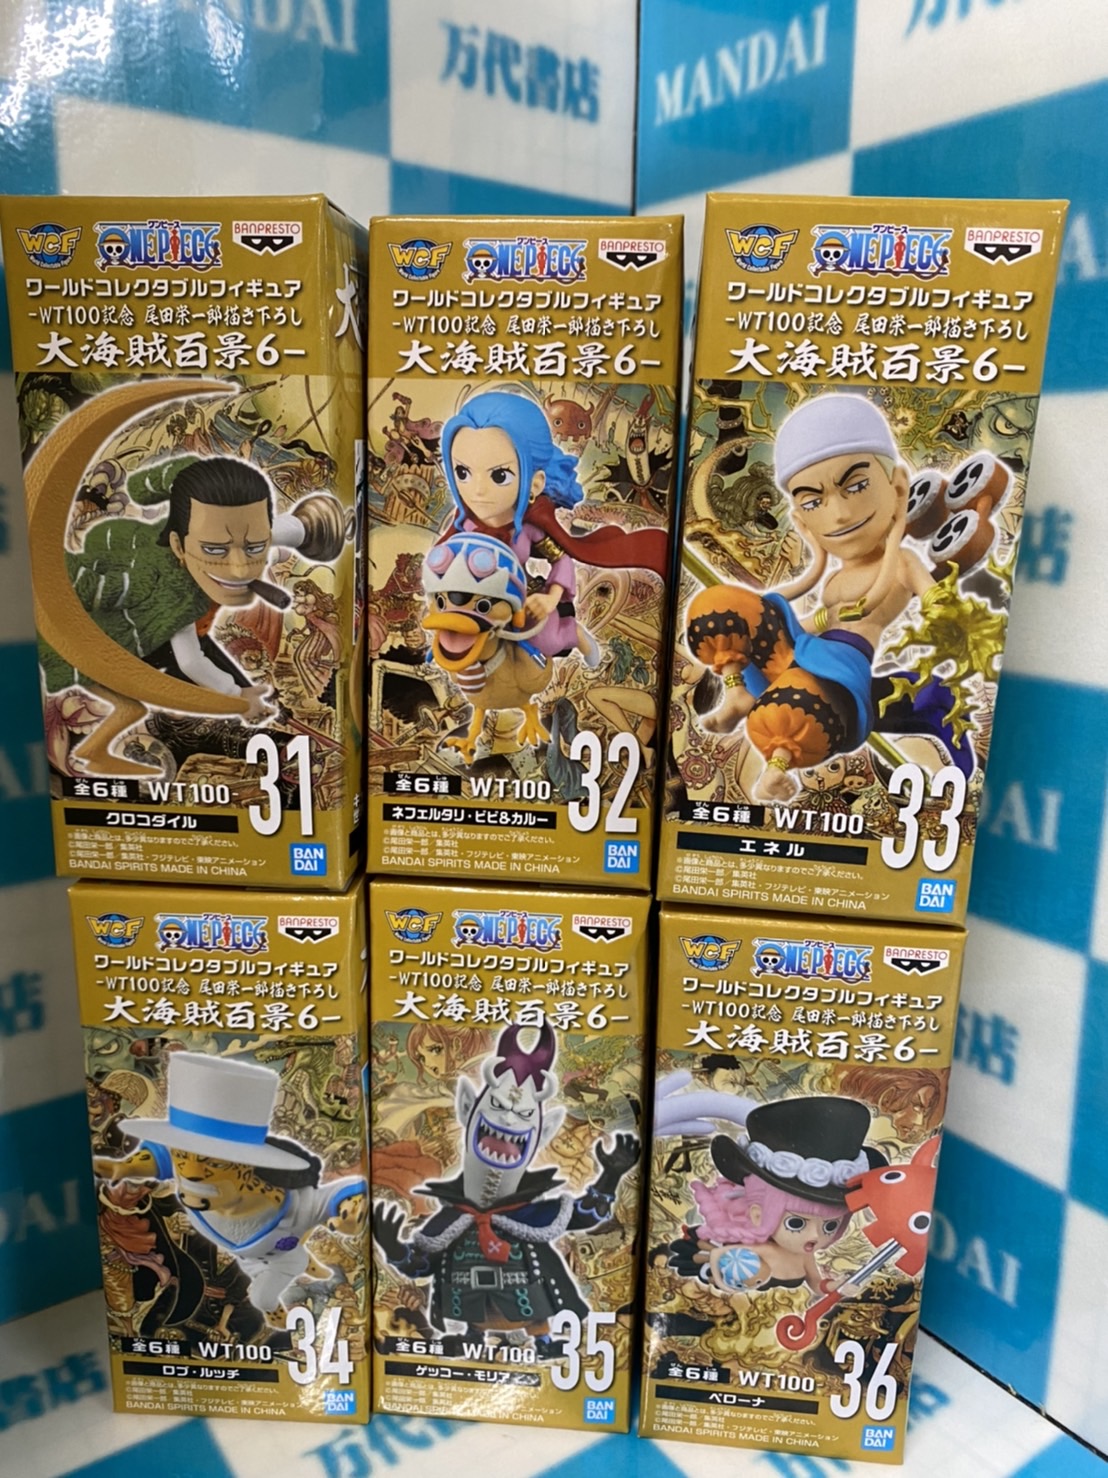 四日市日永店 アミューズ 黒子のバスケ ワンピース Naruto Q Posket Disney Characters 入荷しました 万代書店 三重総合